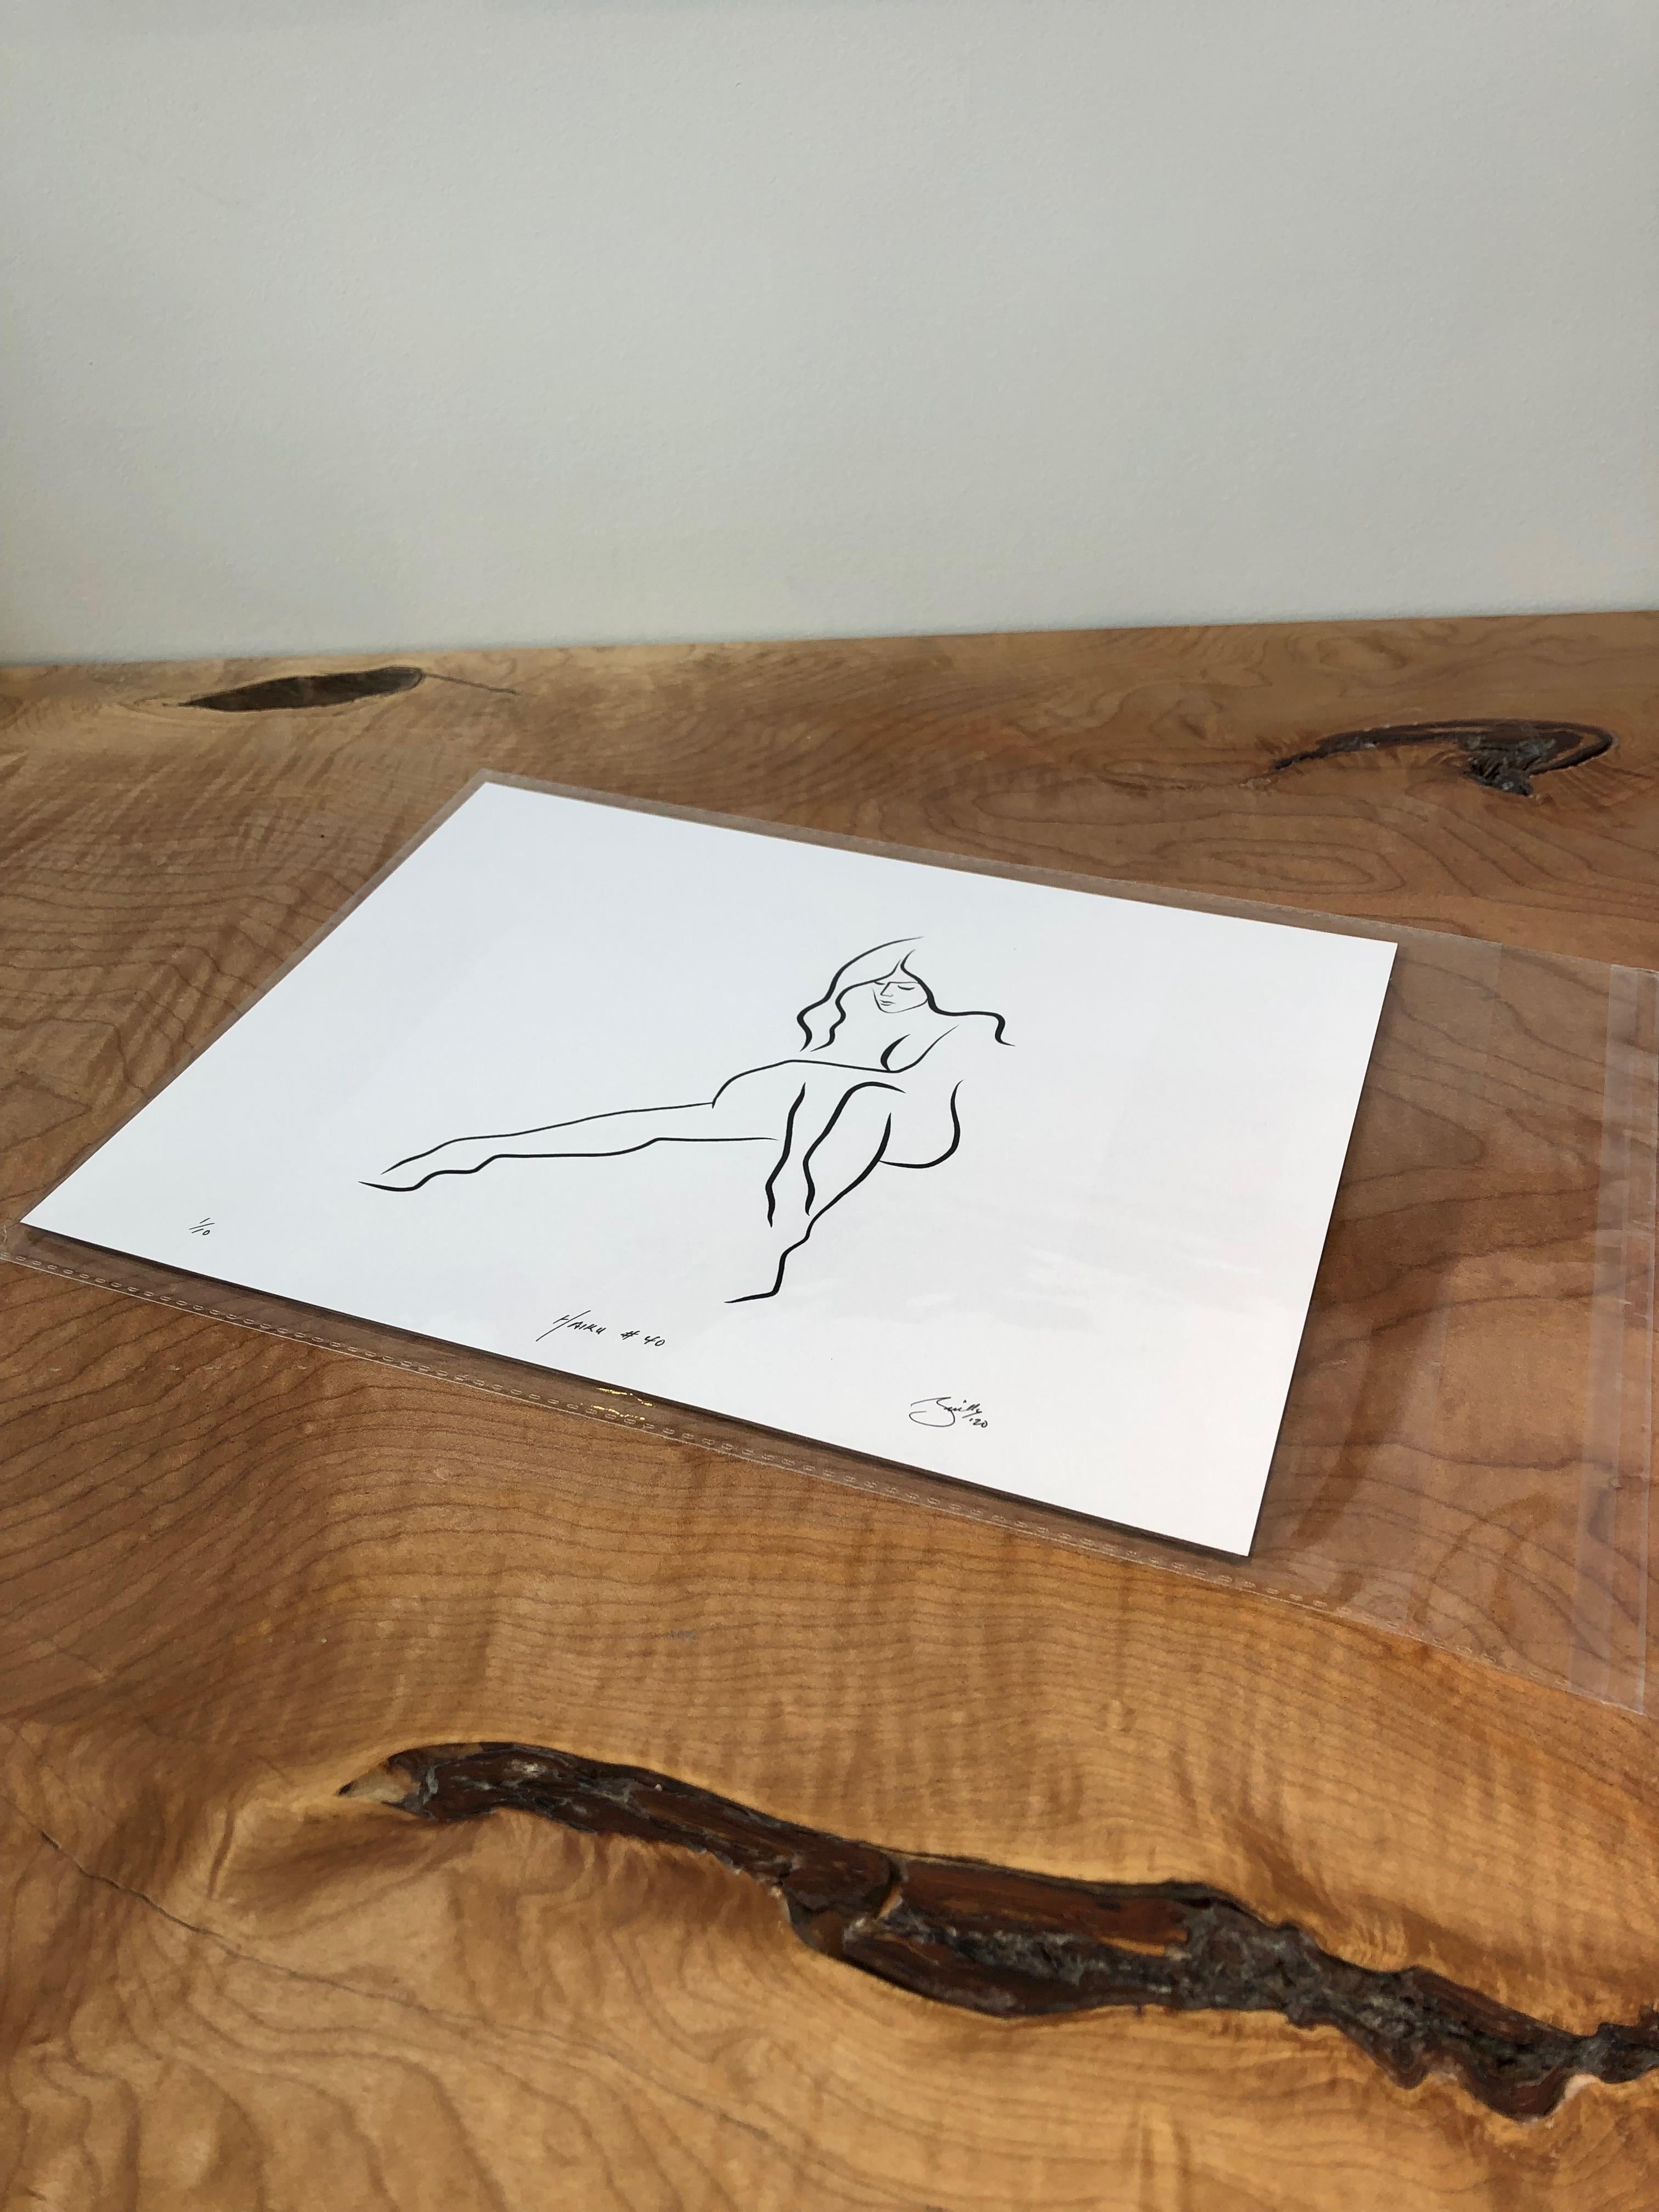 Haiku #40 - Digital Vector Drawing Seated Female Nude Woman Figure - Print by Michael Binkley